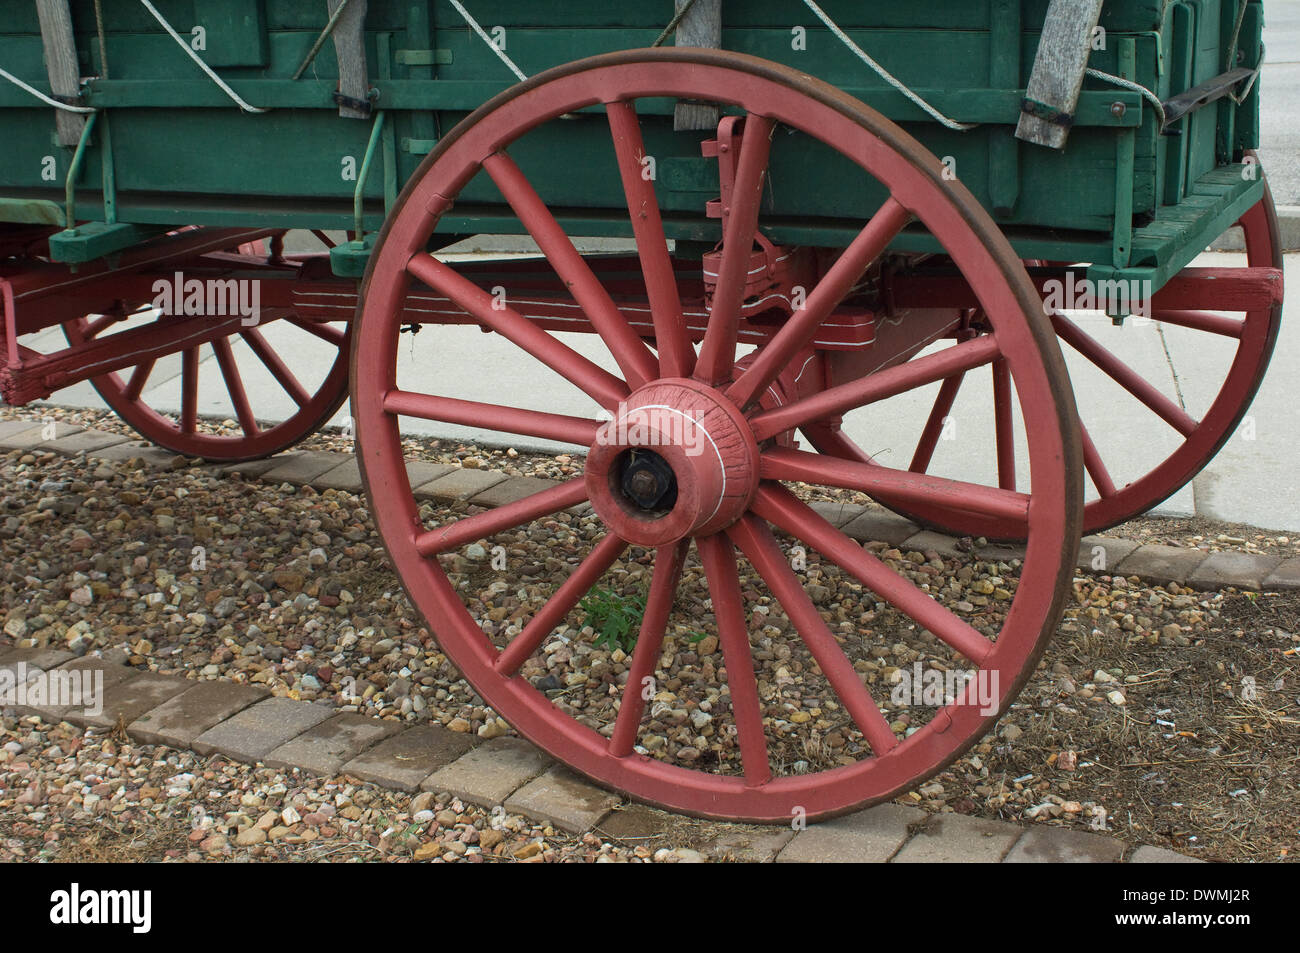 Roue d'un wagon couvert réplique sur le Santa Fe Trail, route Grove, Kansas Conseil. Photographie numérique Banque D'Images